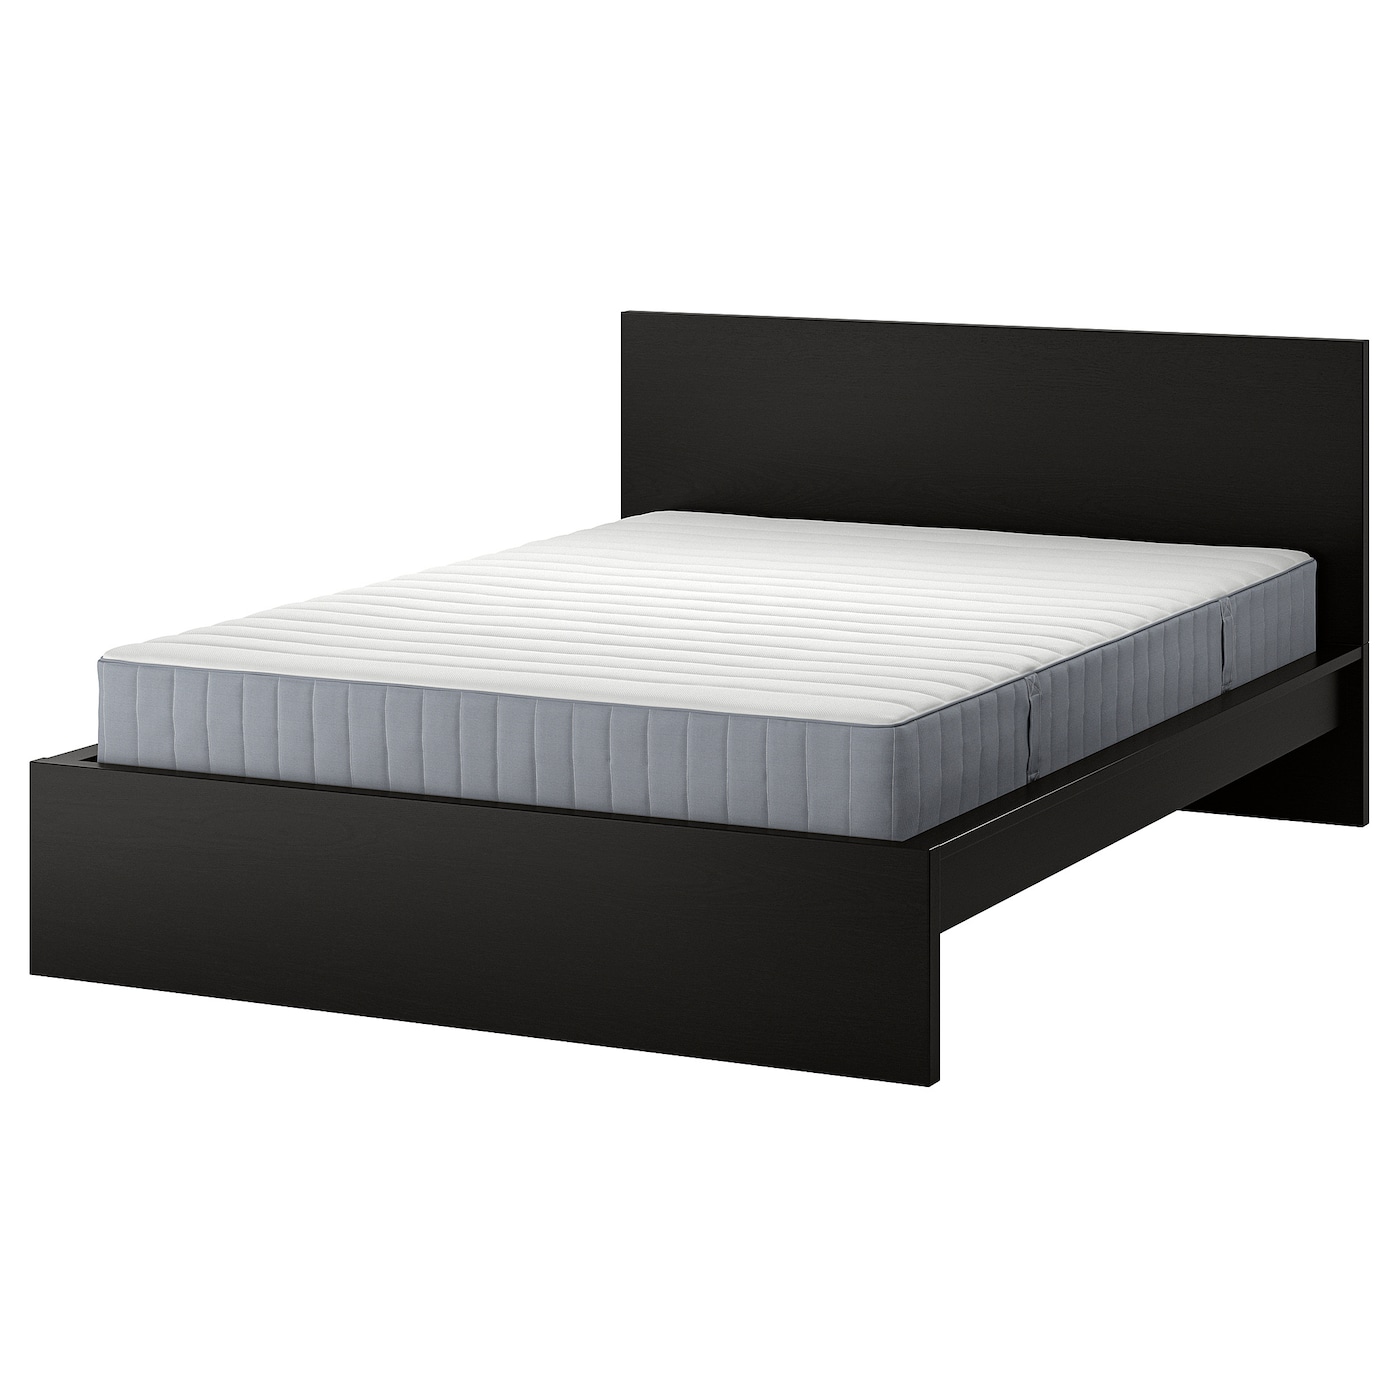 Кровать - IKEA MALM, 200х160 см, матрас средне-жесткий, черно-коричневый, МАЛЬМ ИКЕА